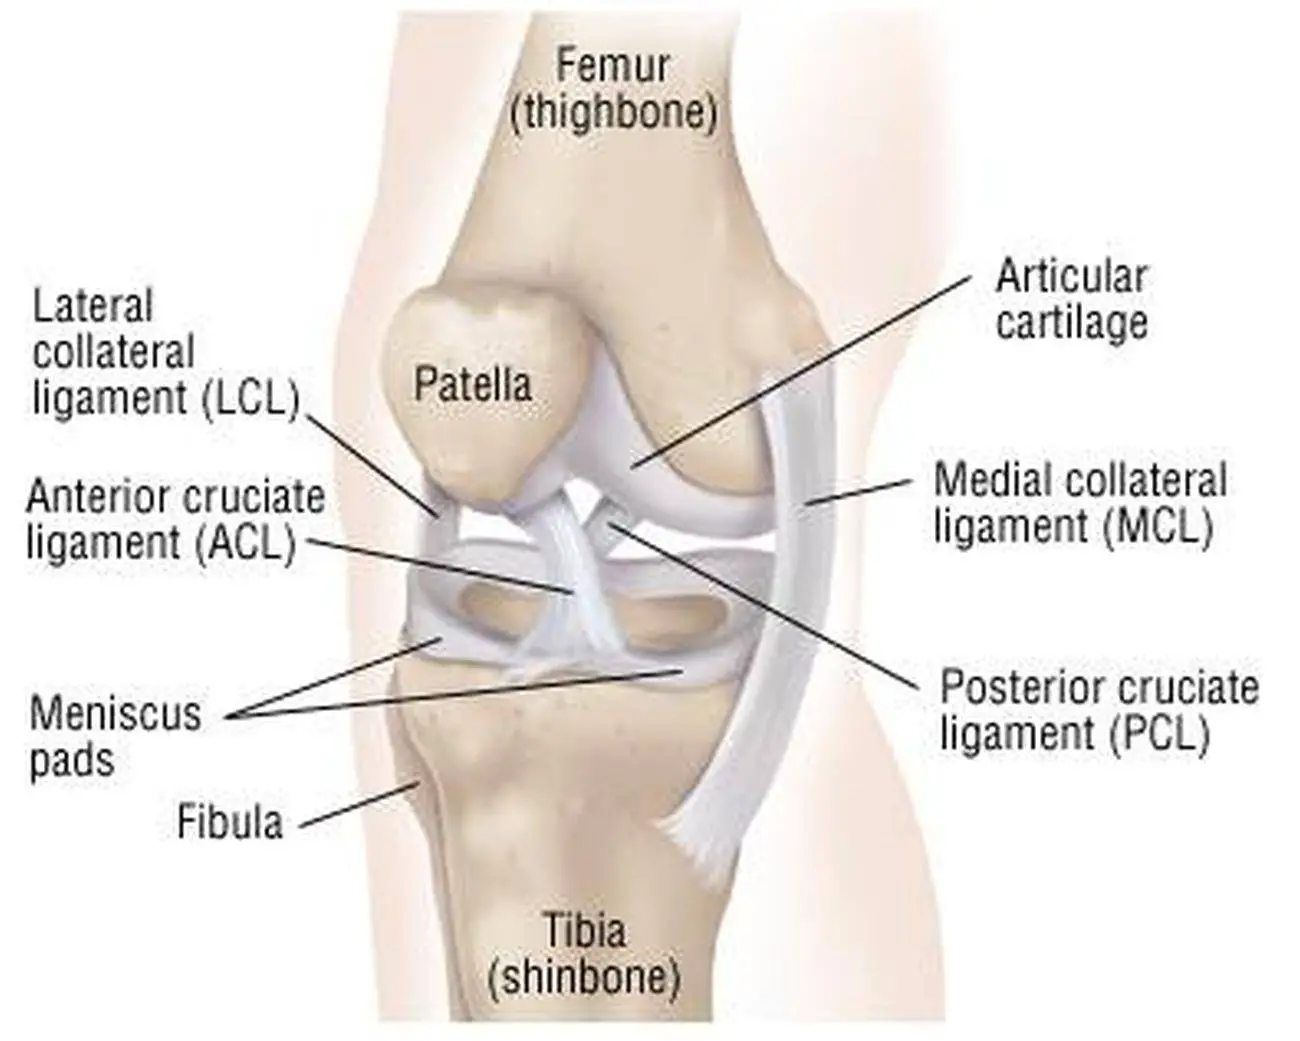 Pictures Of Anterior Cruciate Ligament